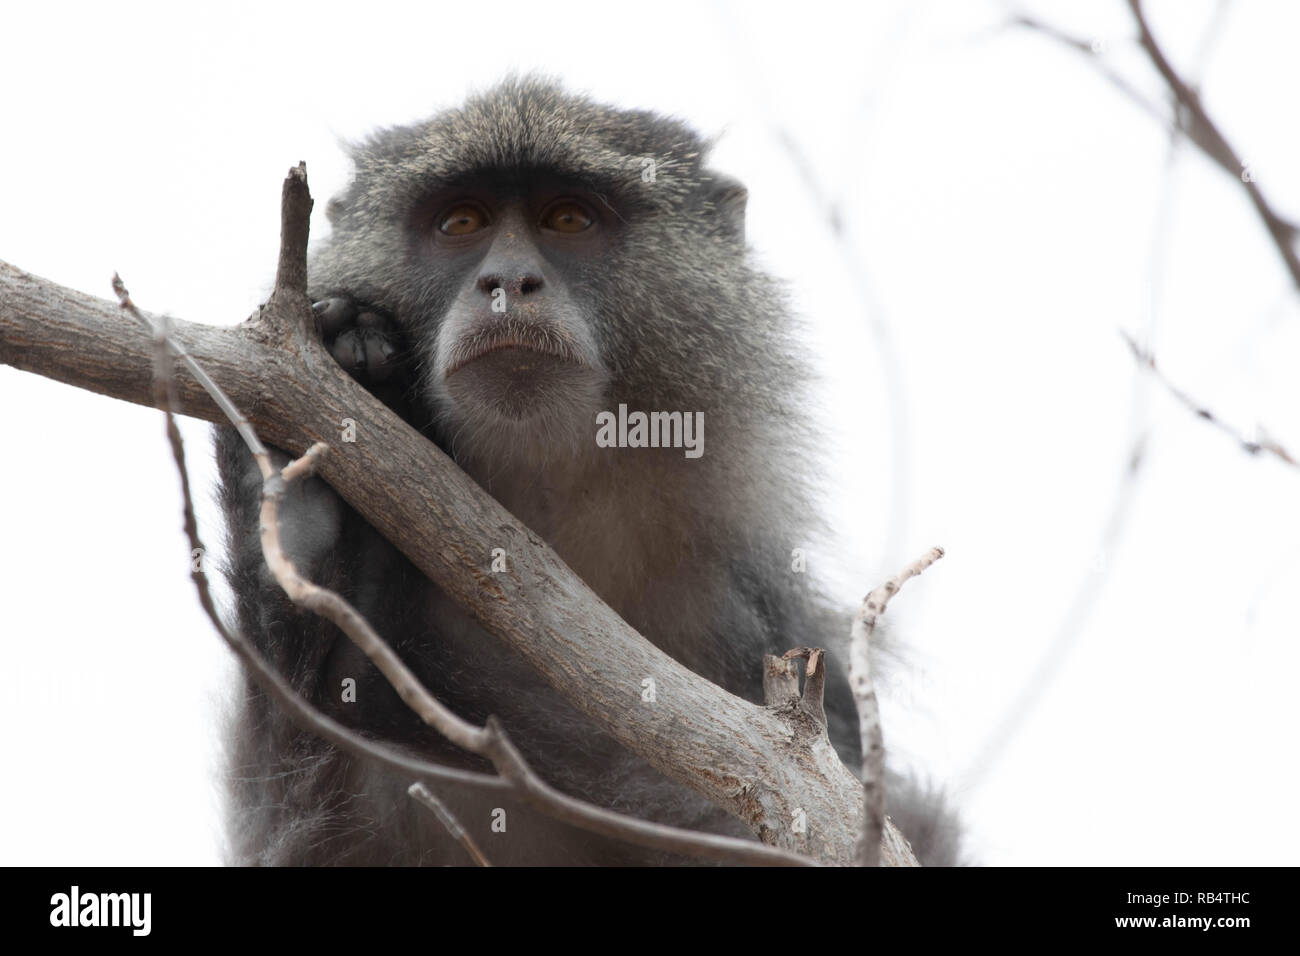 Strappalacrime foto e riprese video hanno catturato una scimmia senza braccioli la riproduzione dopo aver le sue braccia amputate a causa di lesioni da elettrocuzione. Th Foto Stock